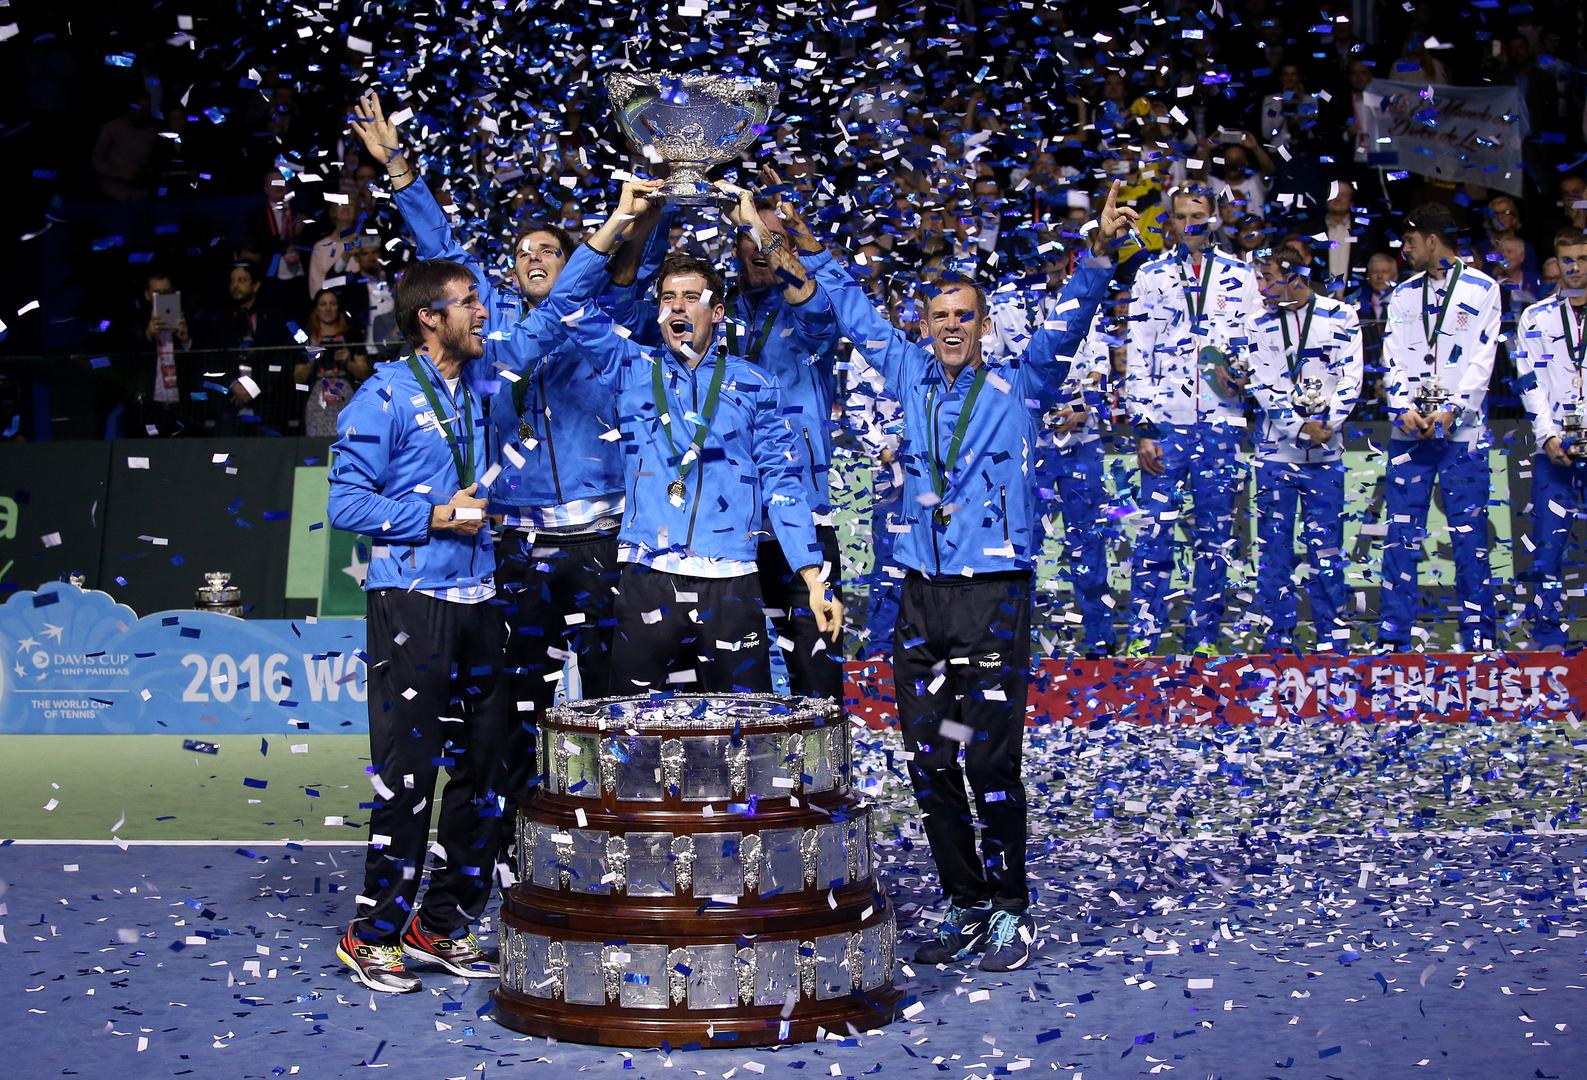 Šuškanje o njihovoj vezi počelo je nakon finala Davisova kupa u Zagrebu u prosincu 2016. kada je Del Potro donio Argentincima naslov u susretu protiv Hrvatske